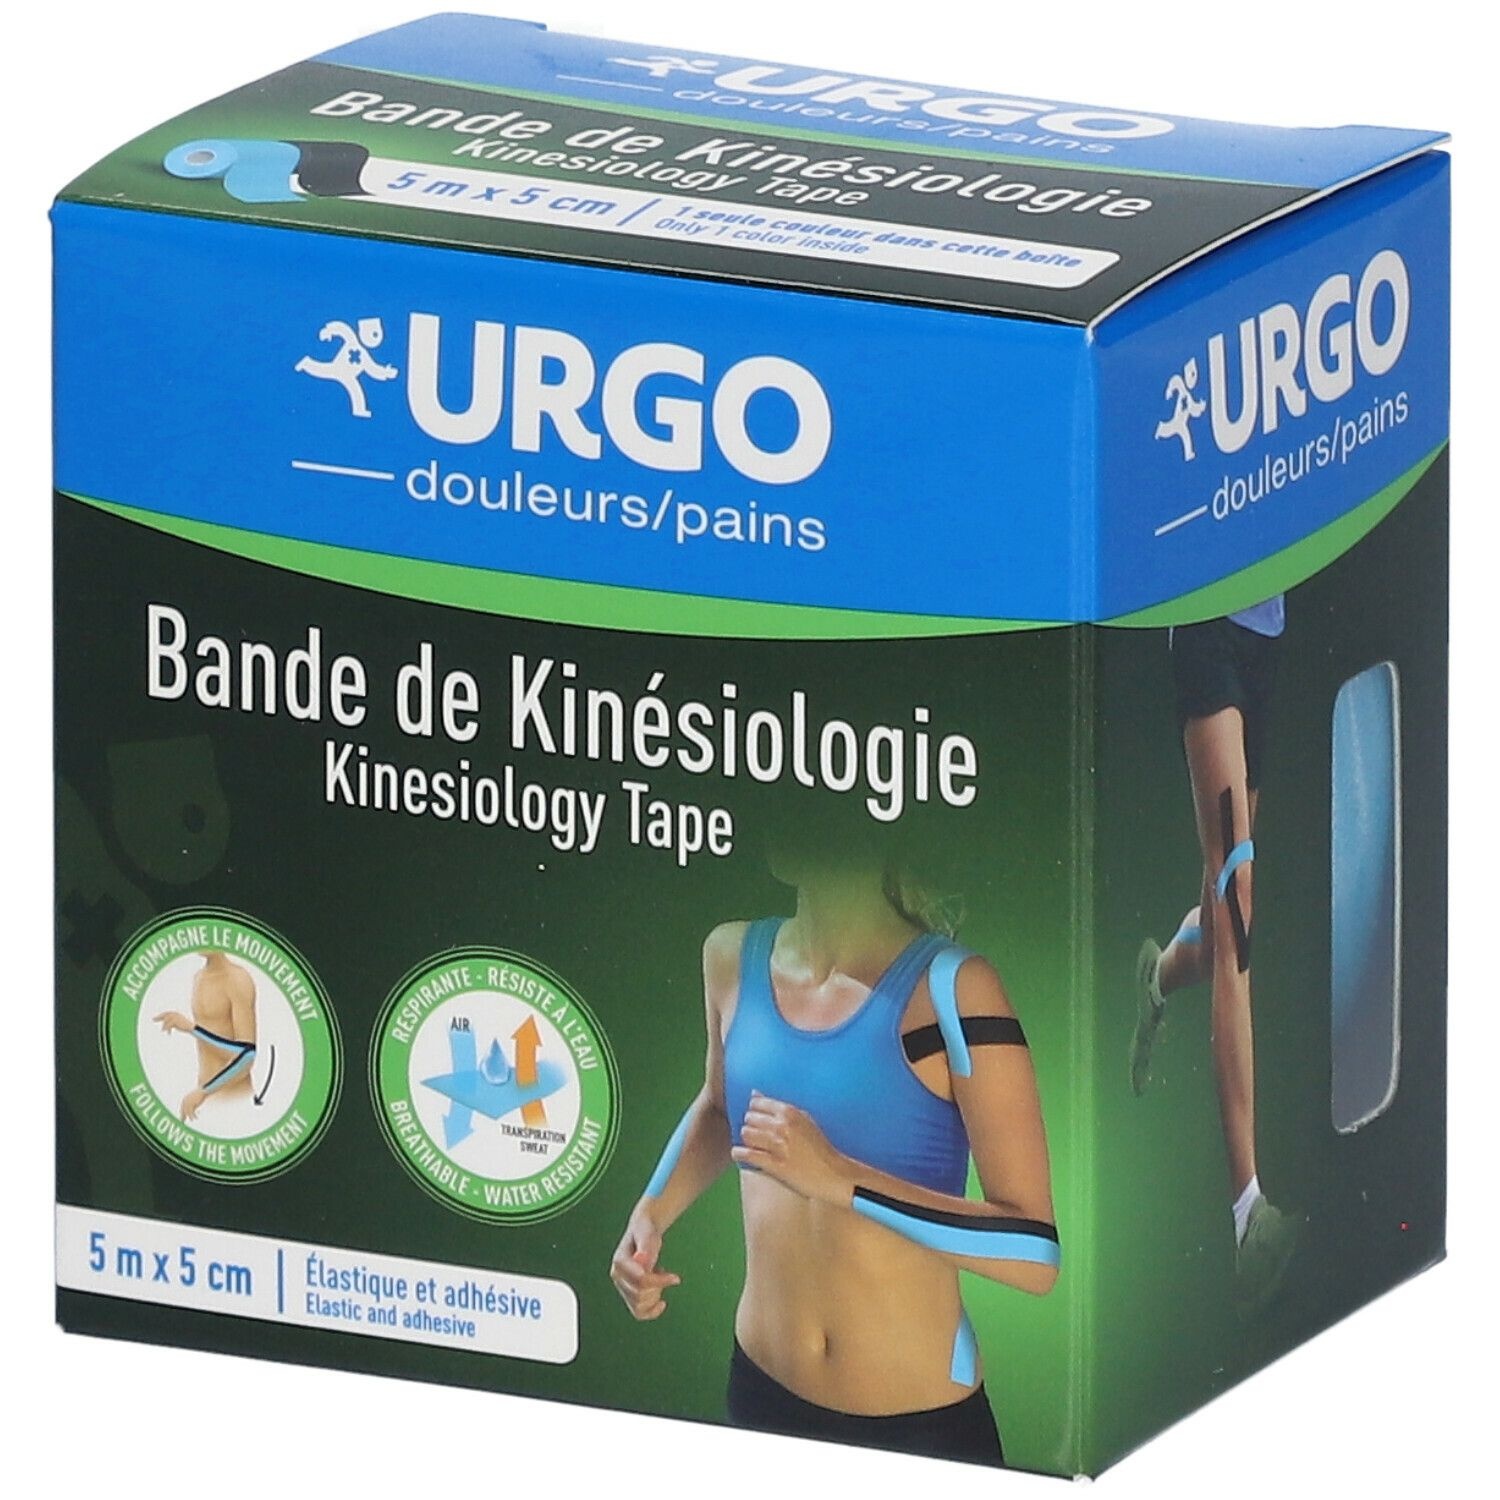 URGO Bande de Kinésiologie 5 m x 5 cm 1 pc(s) bandage(s)